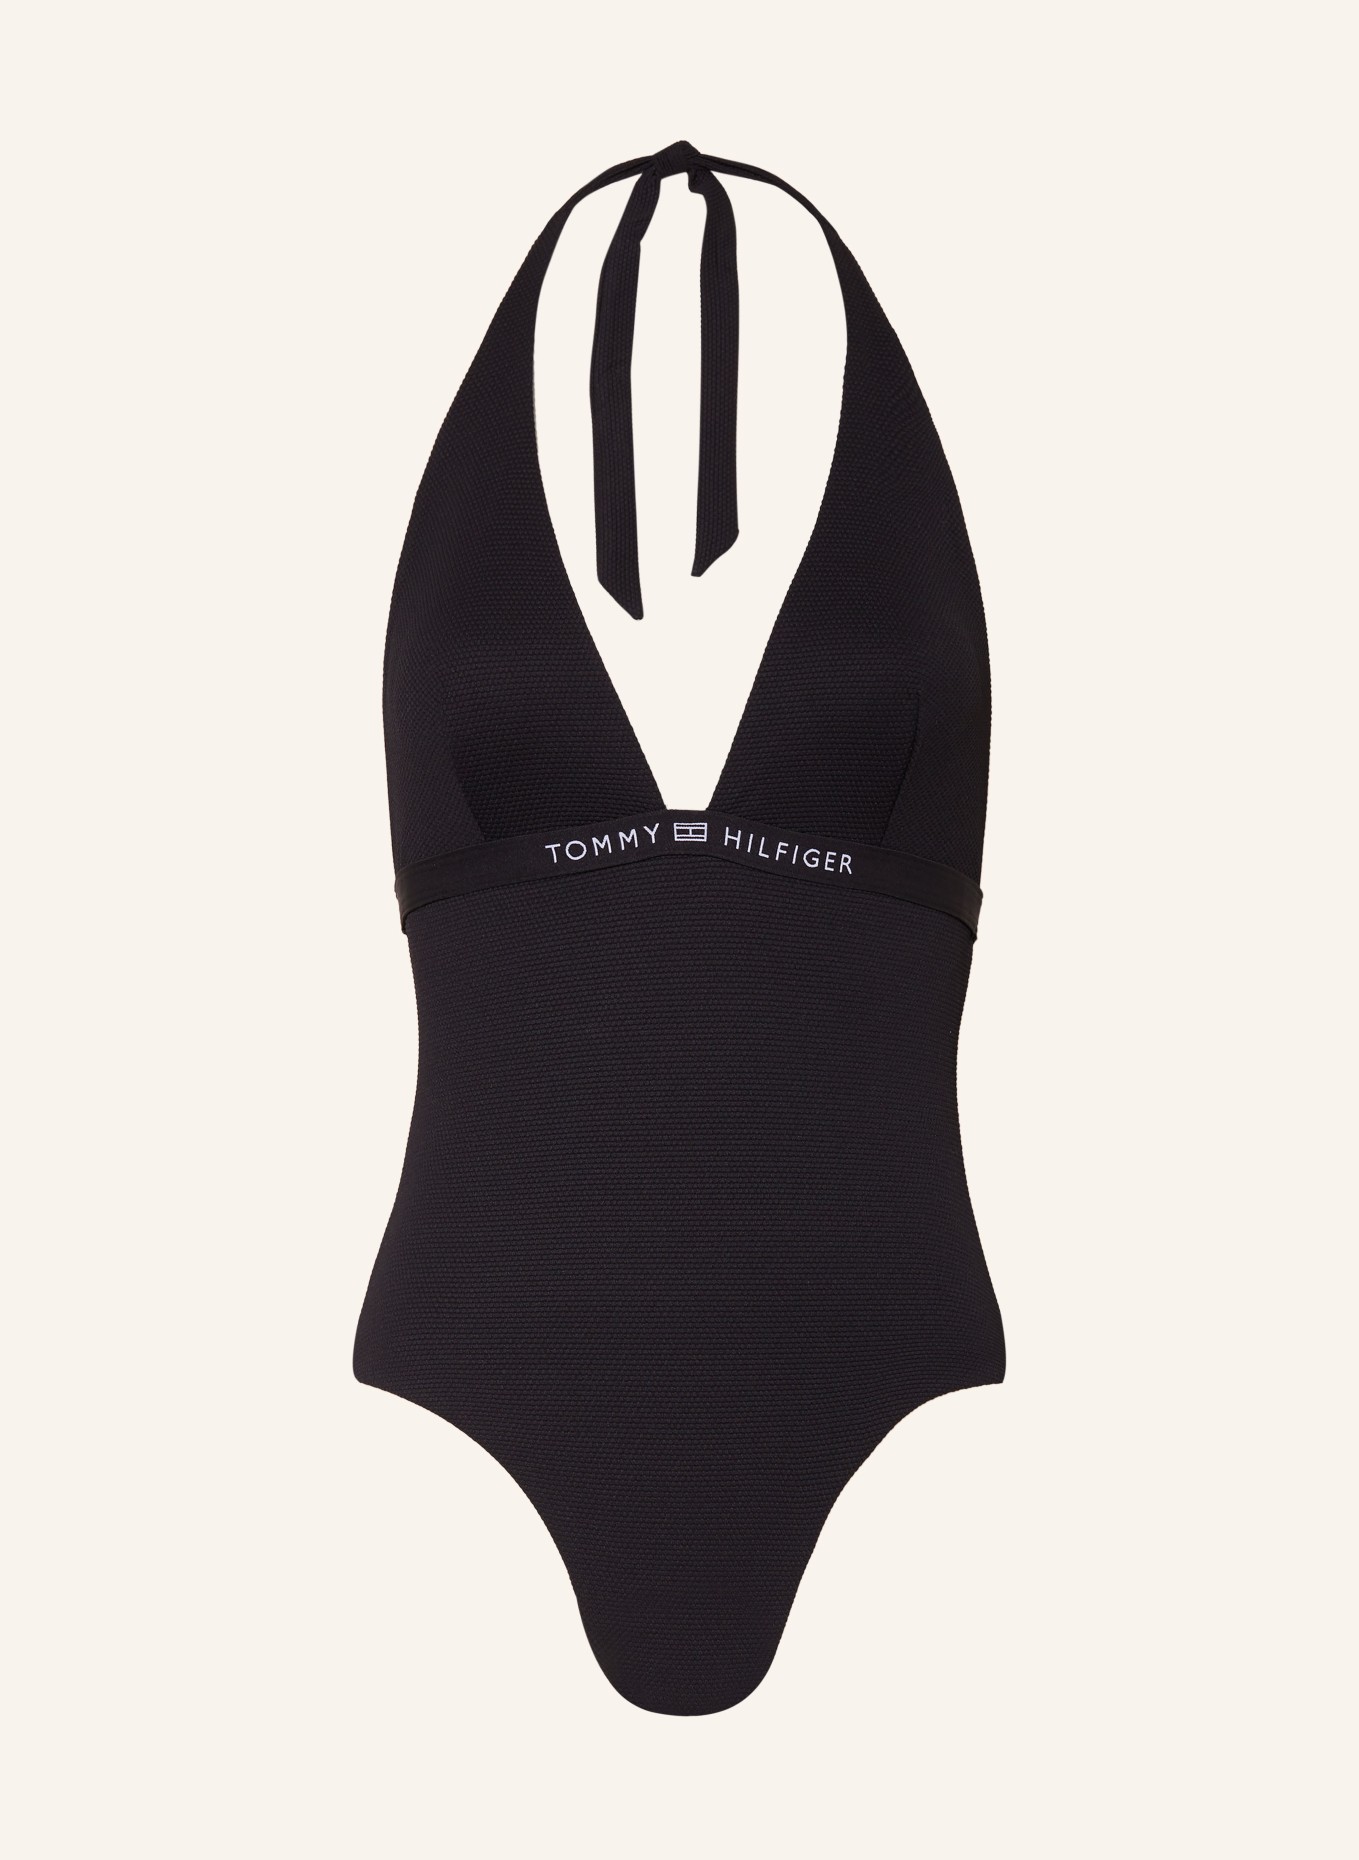 TOMMY HILFIGER Neckholder-Badeanzug, Farbe: SCHWARZ (Bild 1)